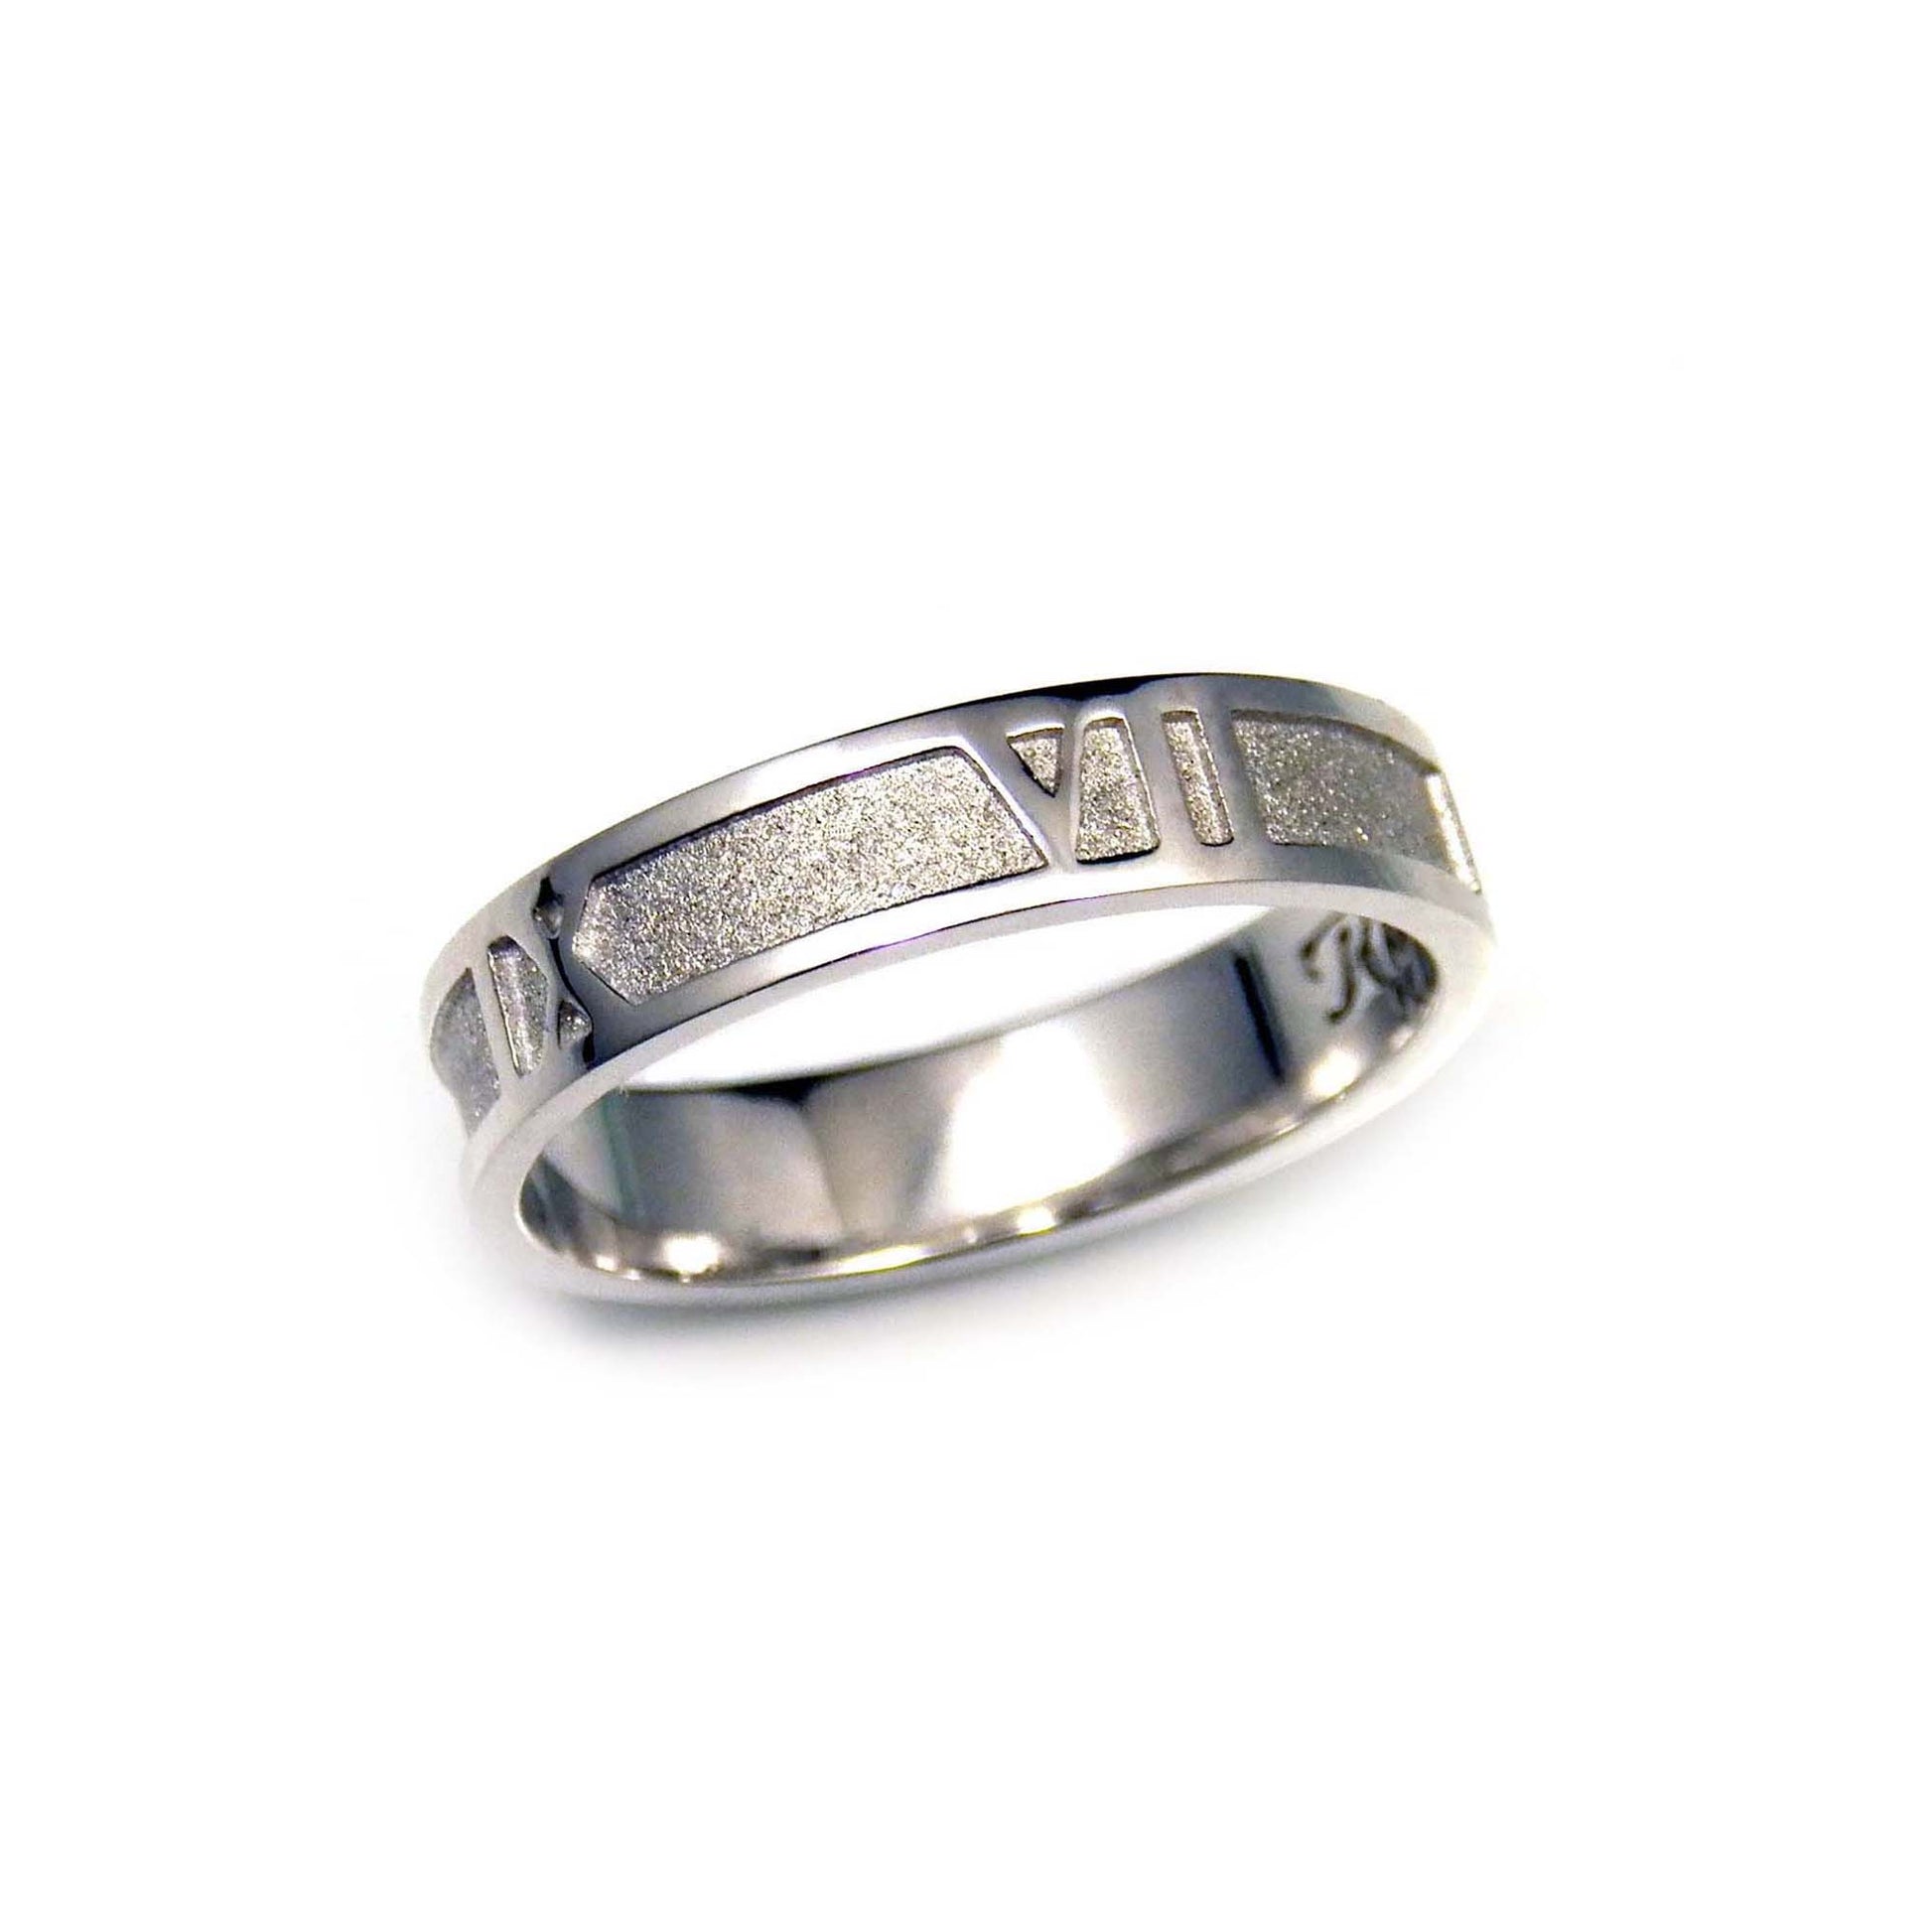 925 silver Roman Numerals Ring